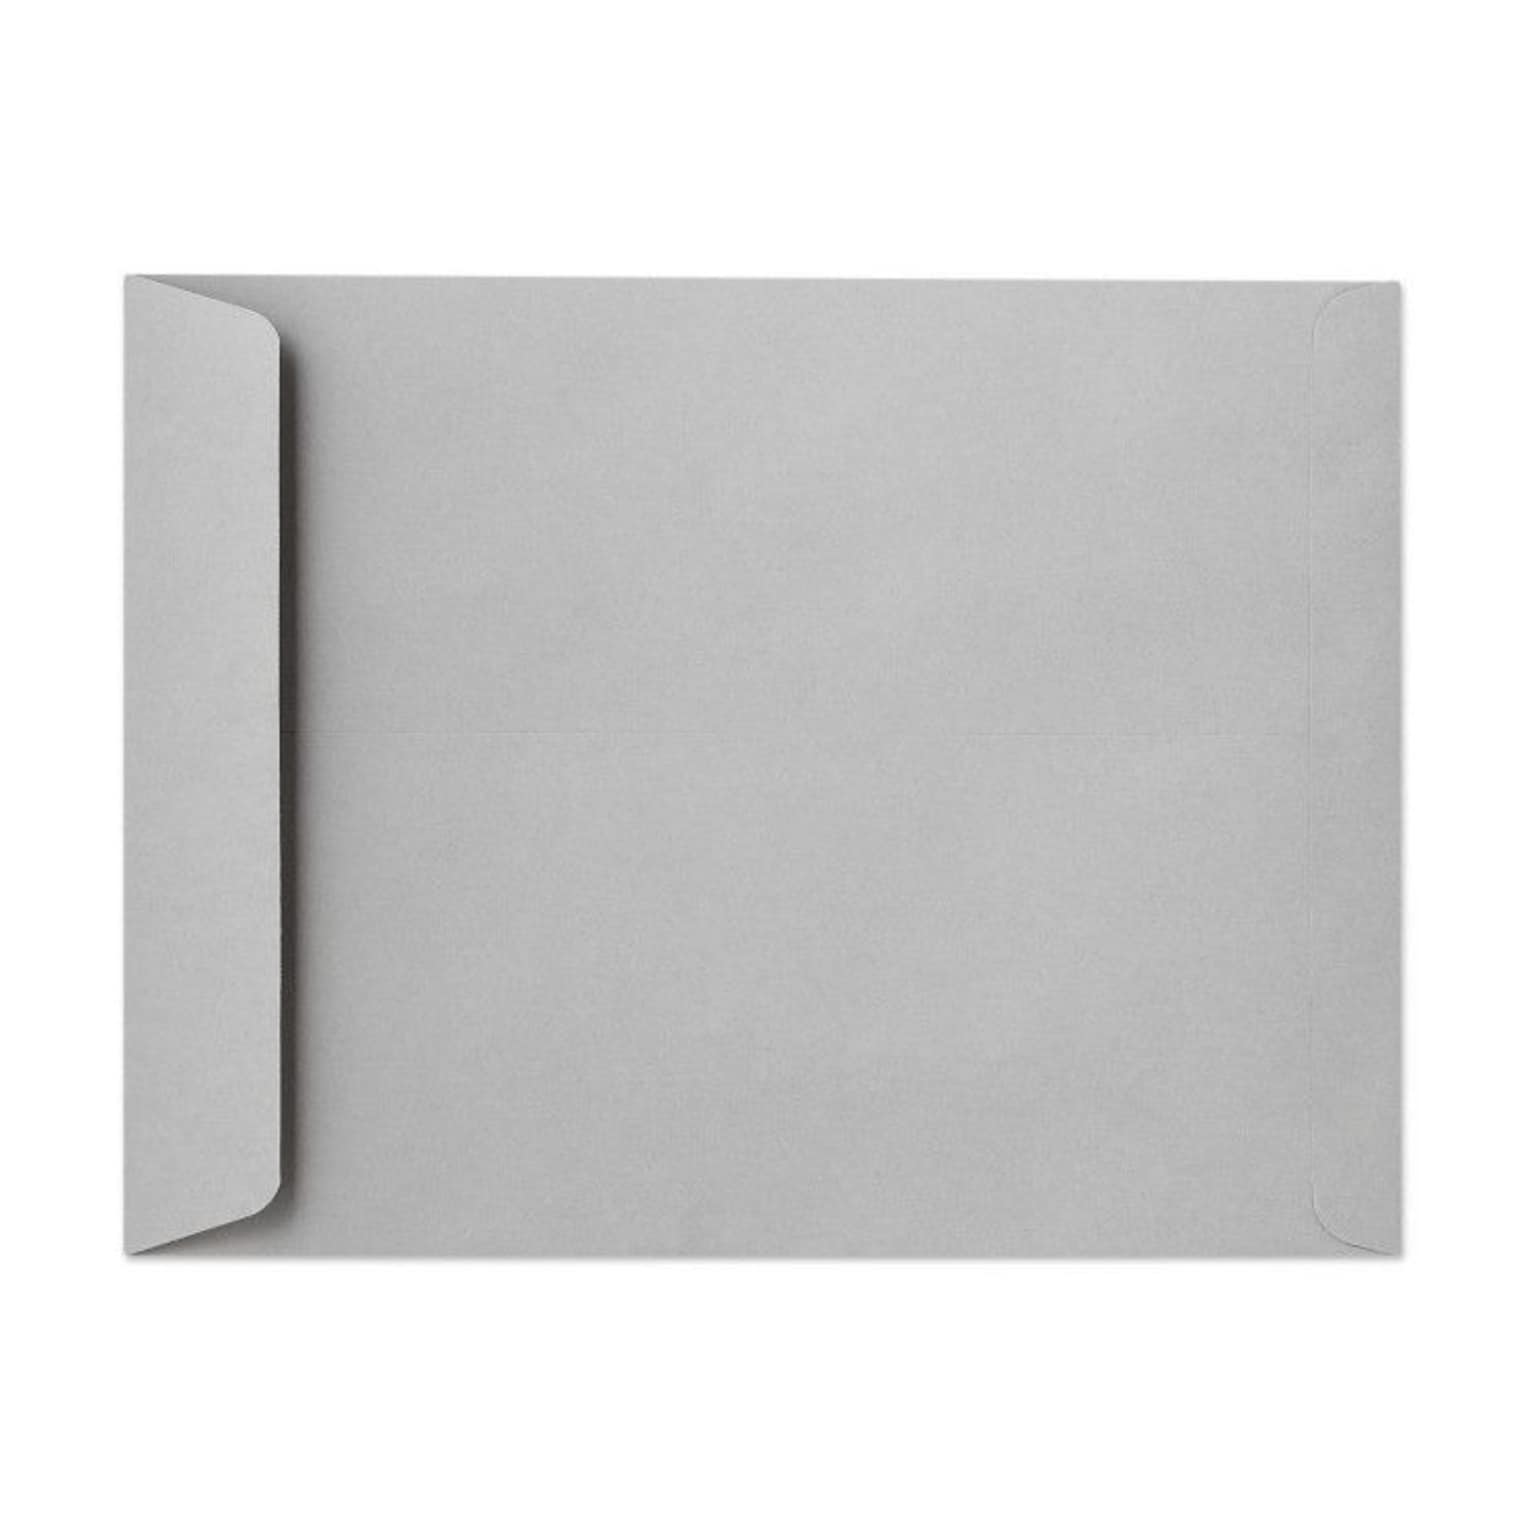 LUX® 28lbs. 10 x 13 Open End Envelopes, Gray Kraft, 500/BX